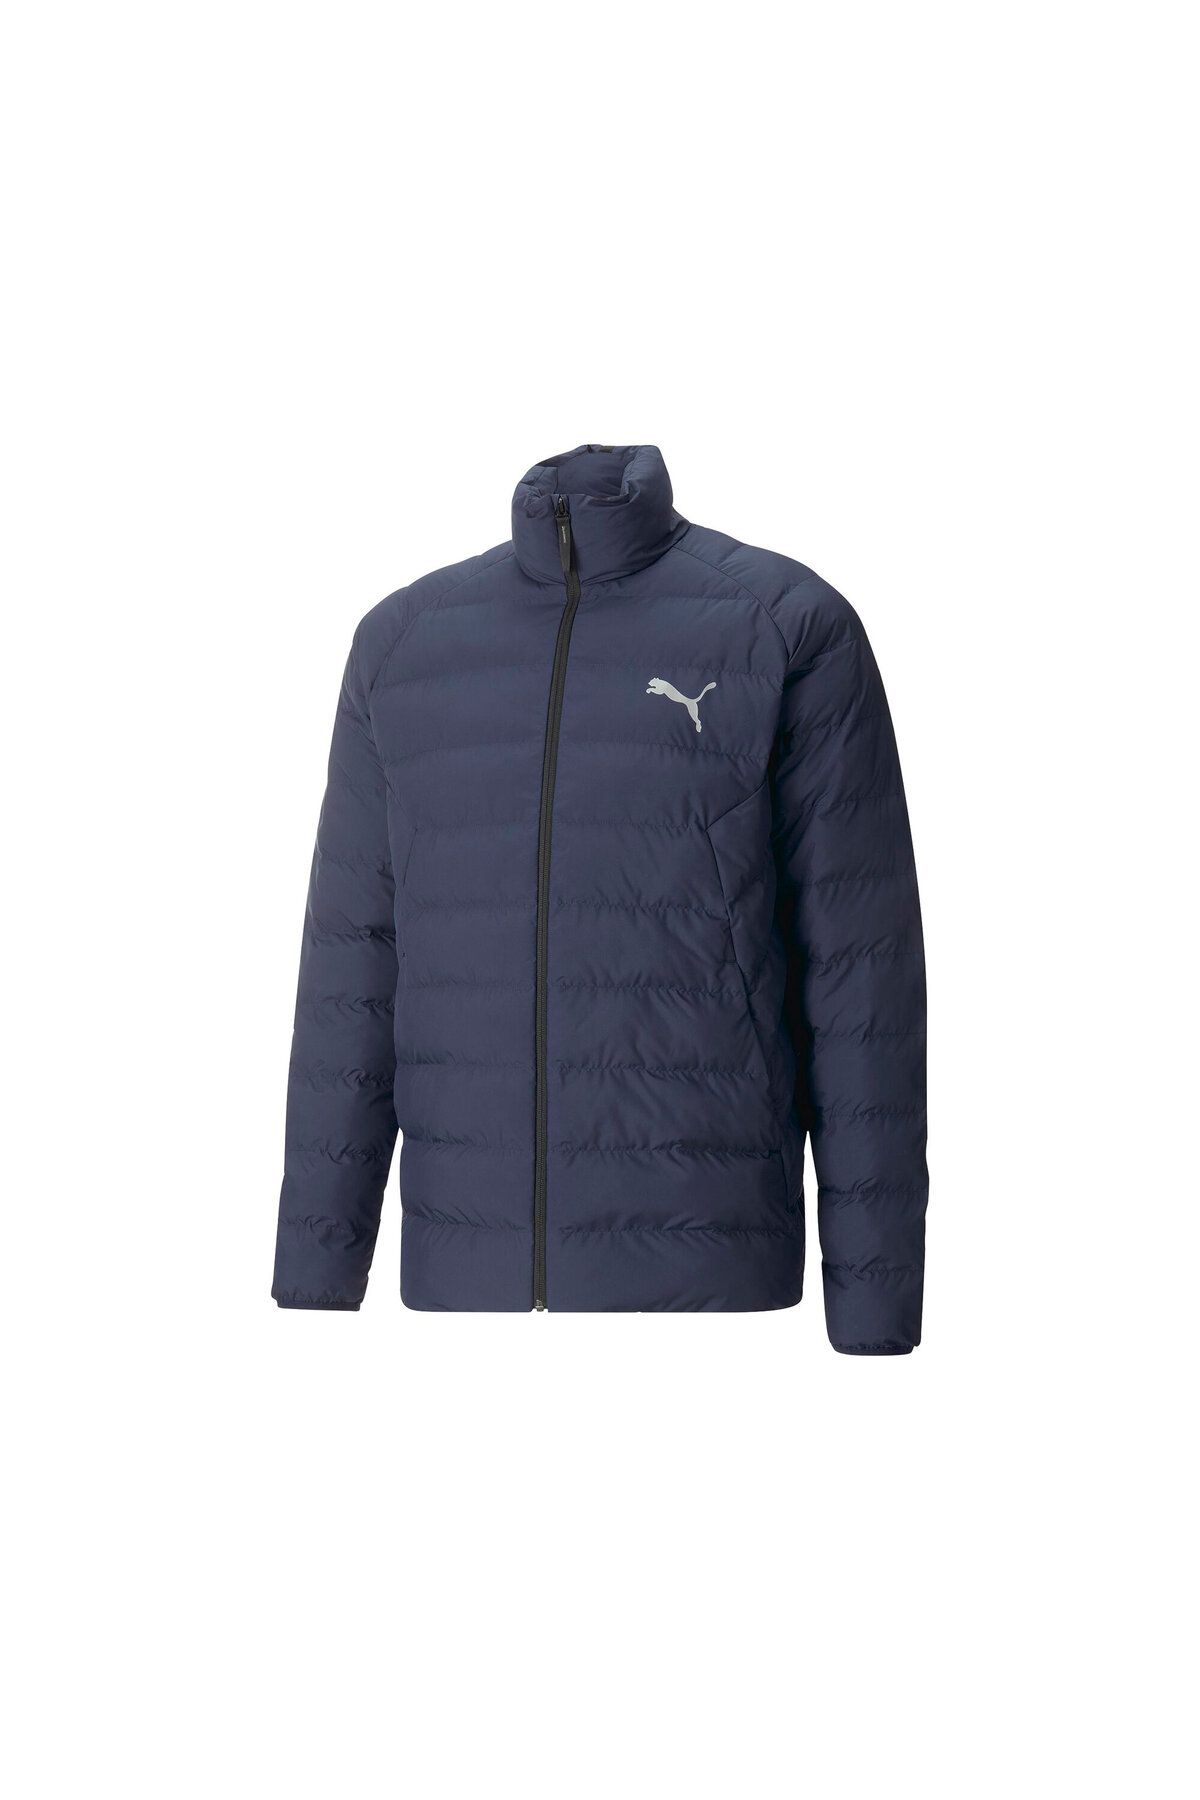 Puma Polyball Jacket Erkek Günlük Mont -Lacivert